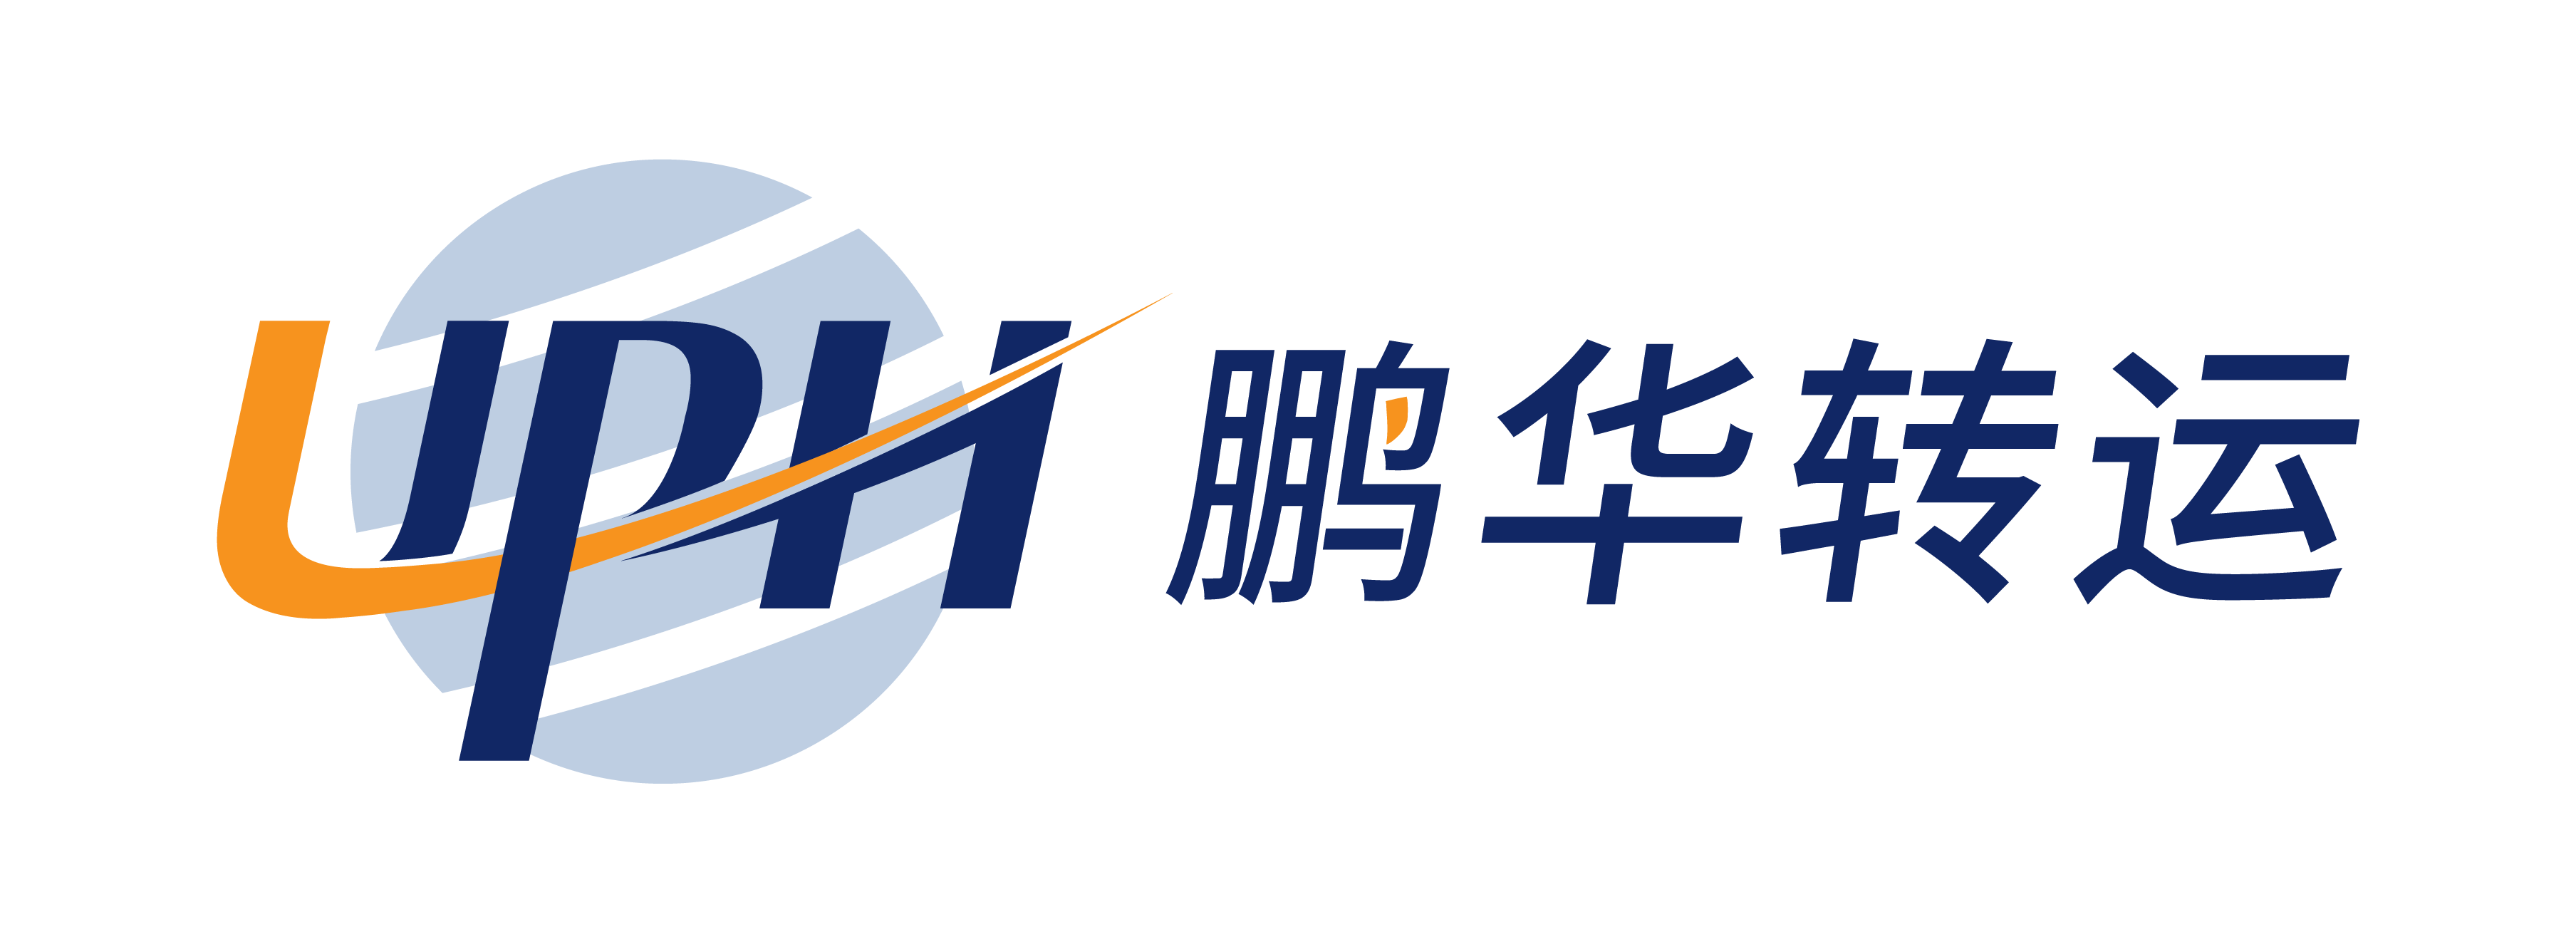 鹏华转运logo